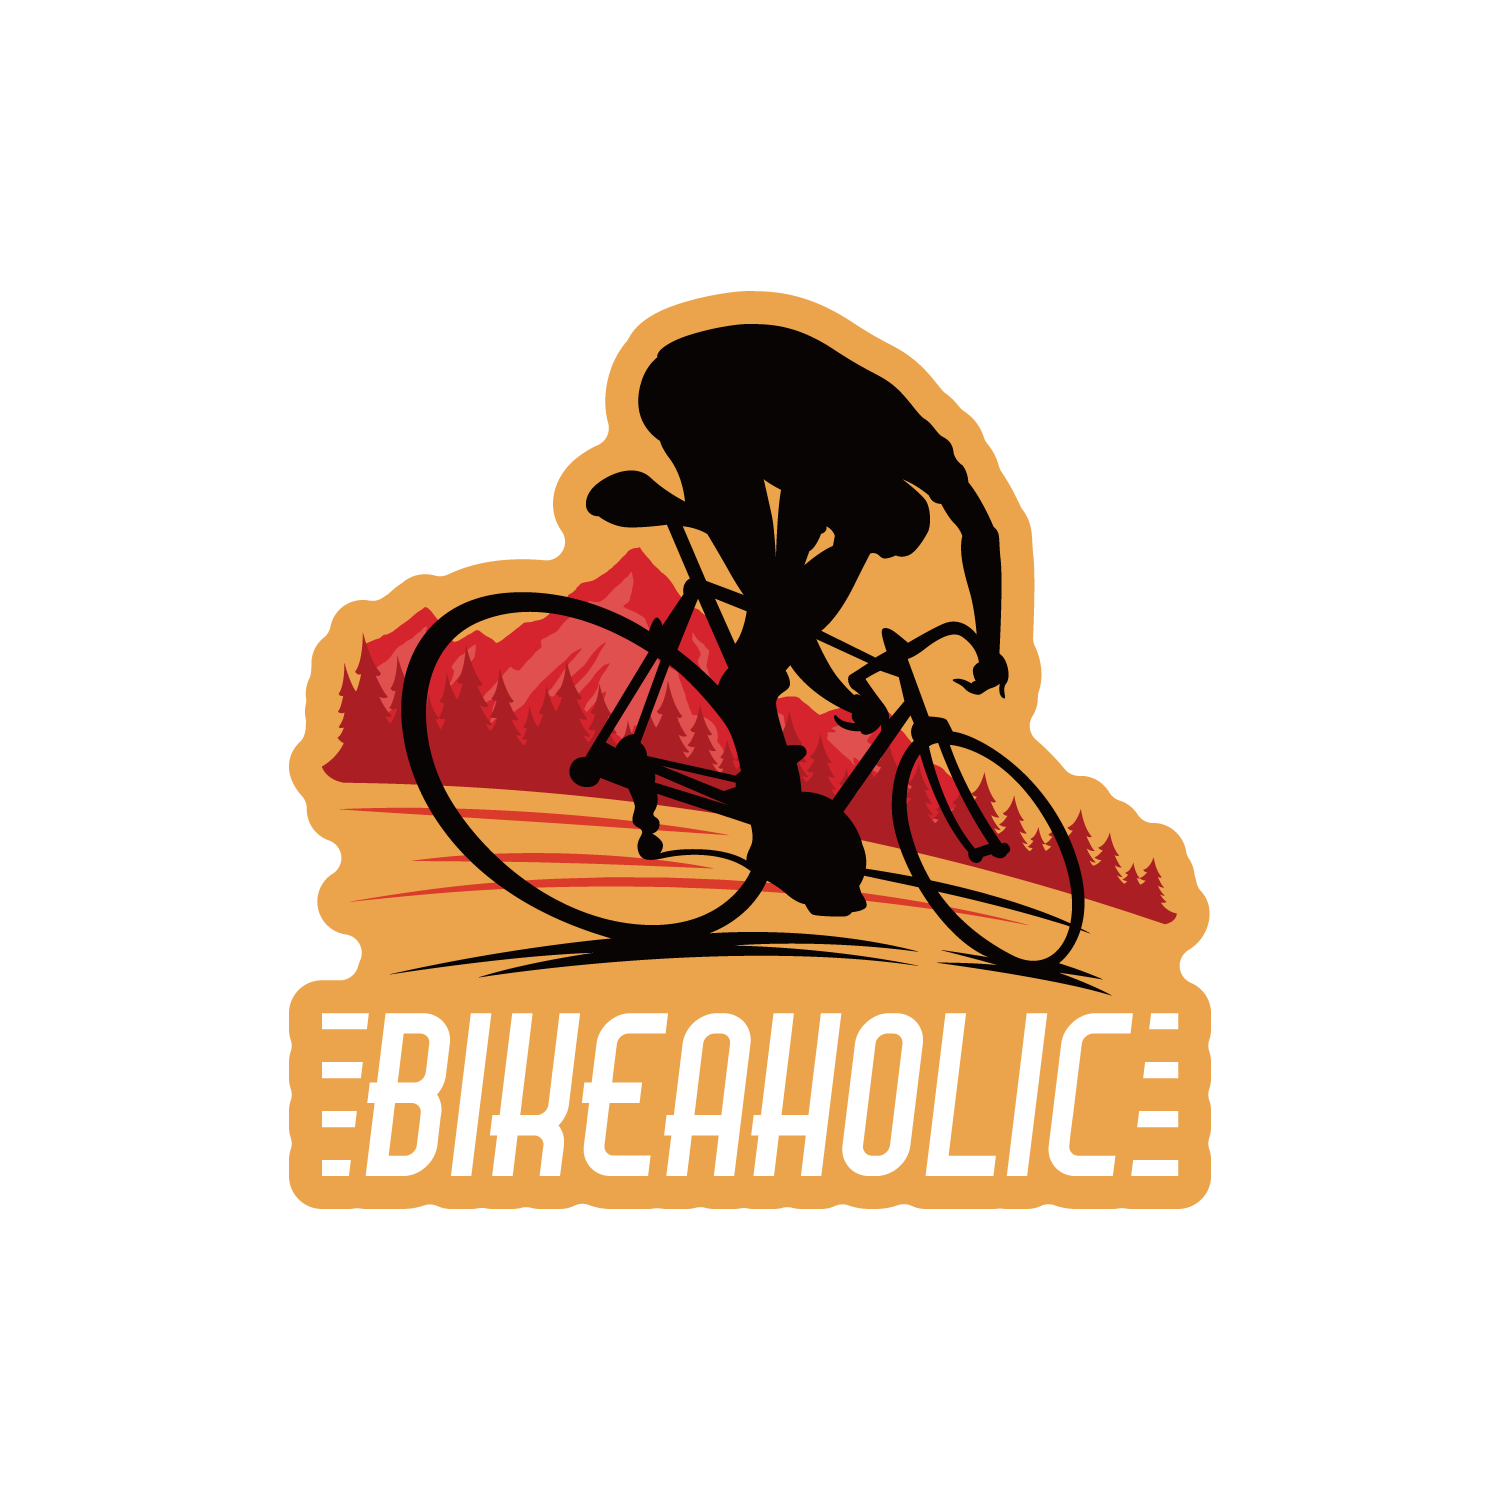 バイカーホリック (Bikeaholic-Bike)